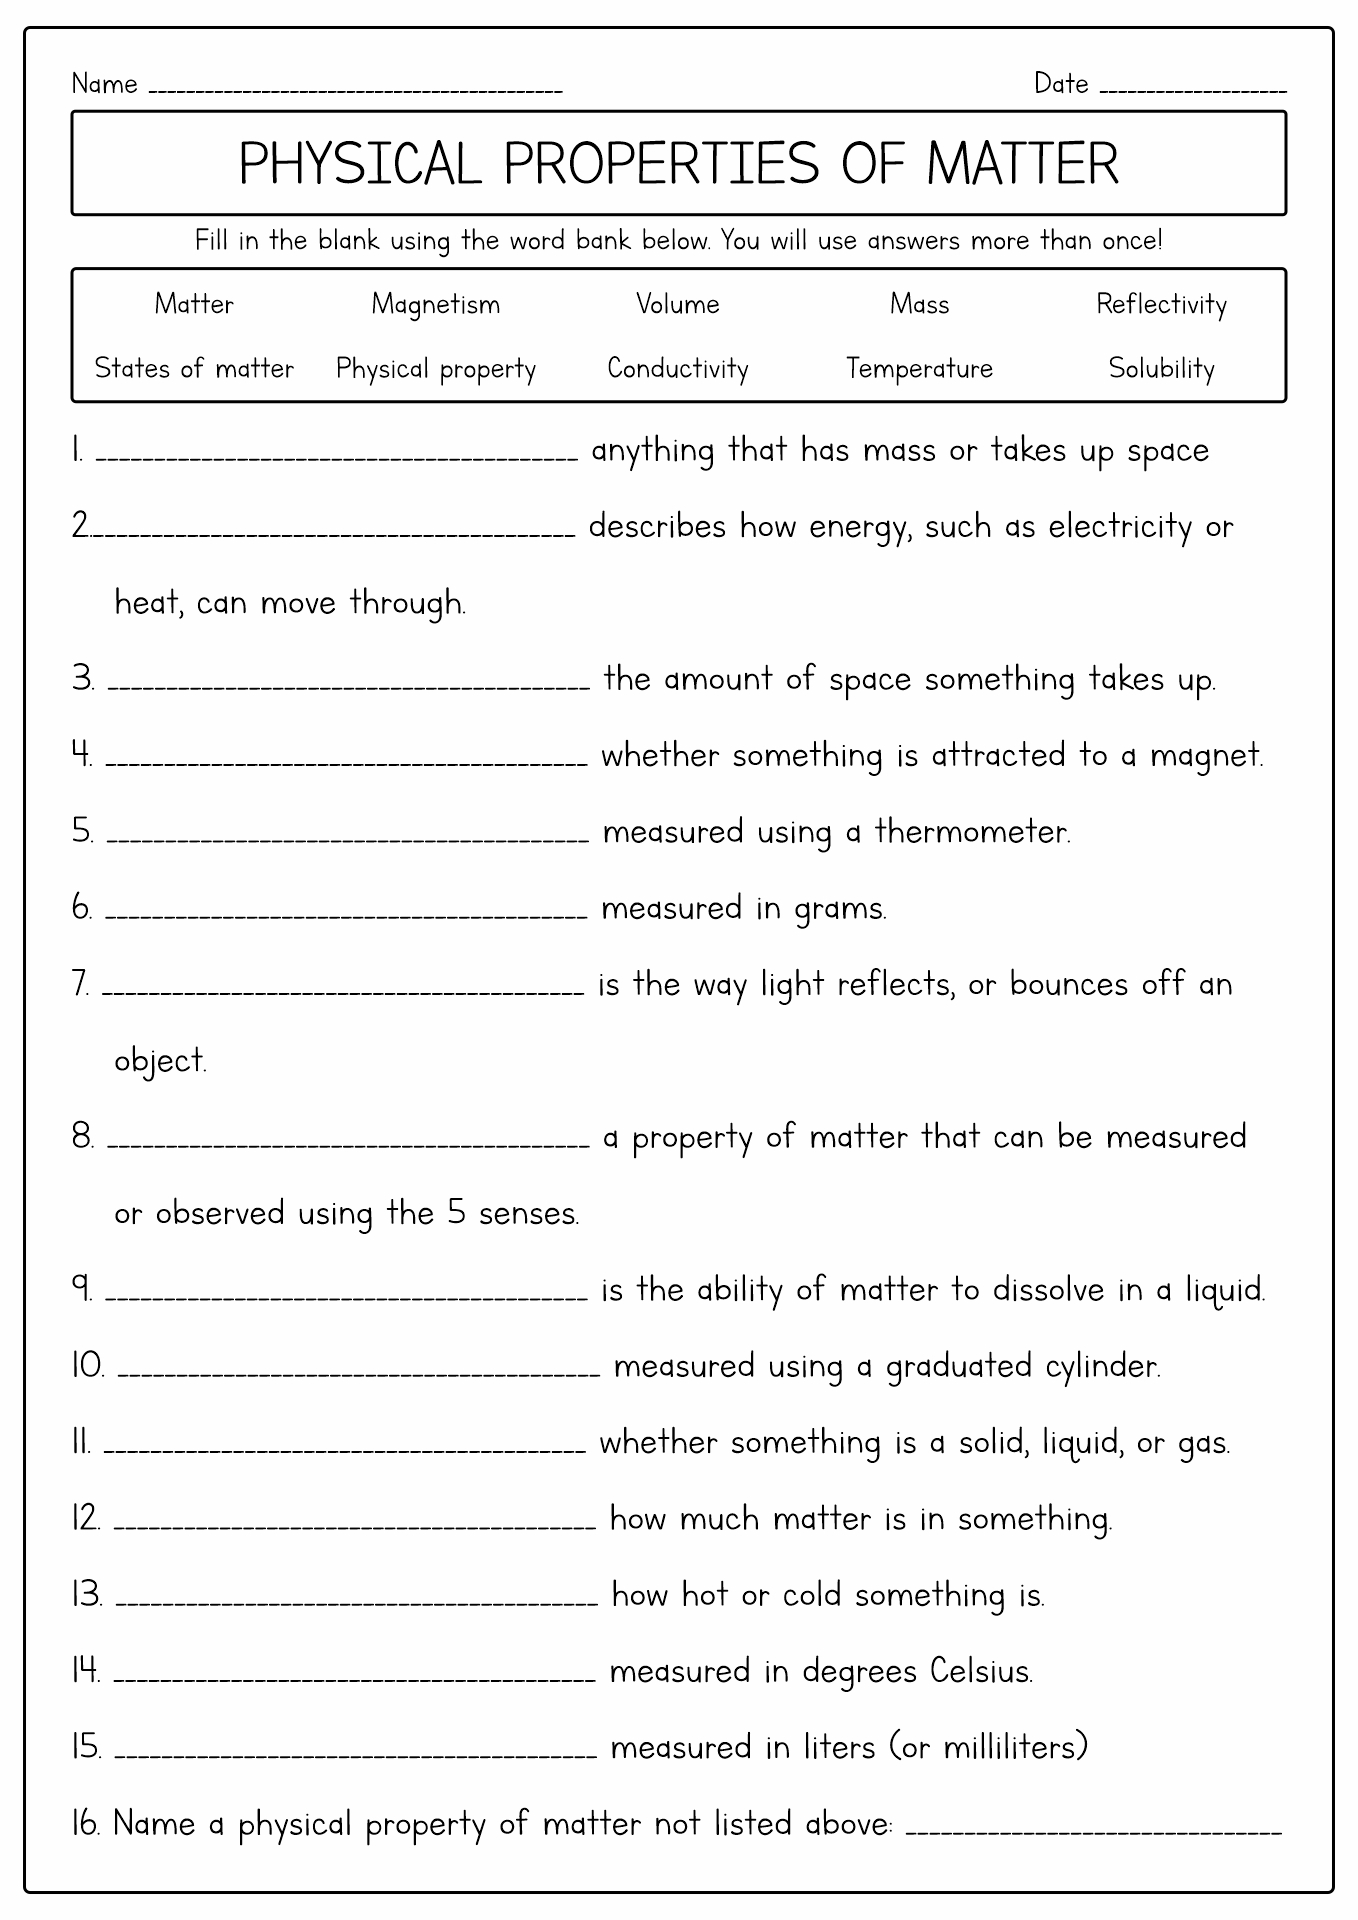 Physical Matter Properties Worksheet Image